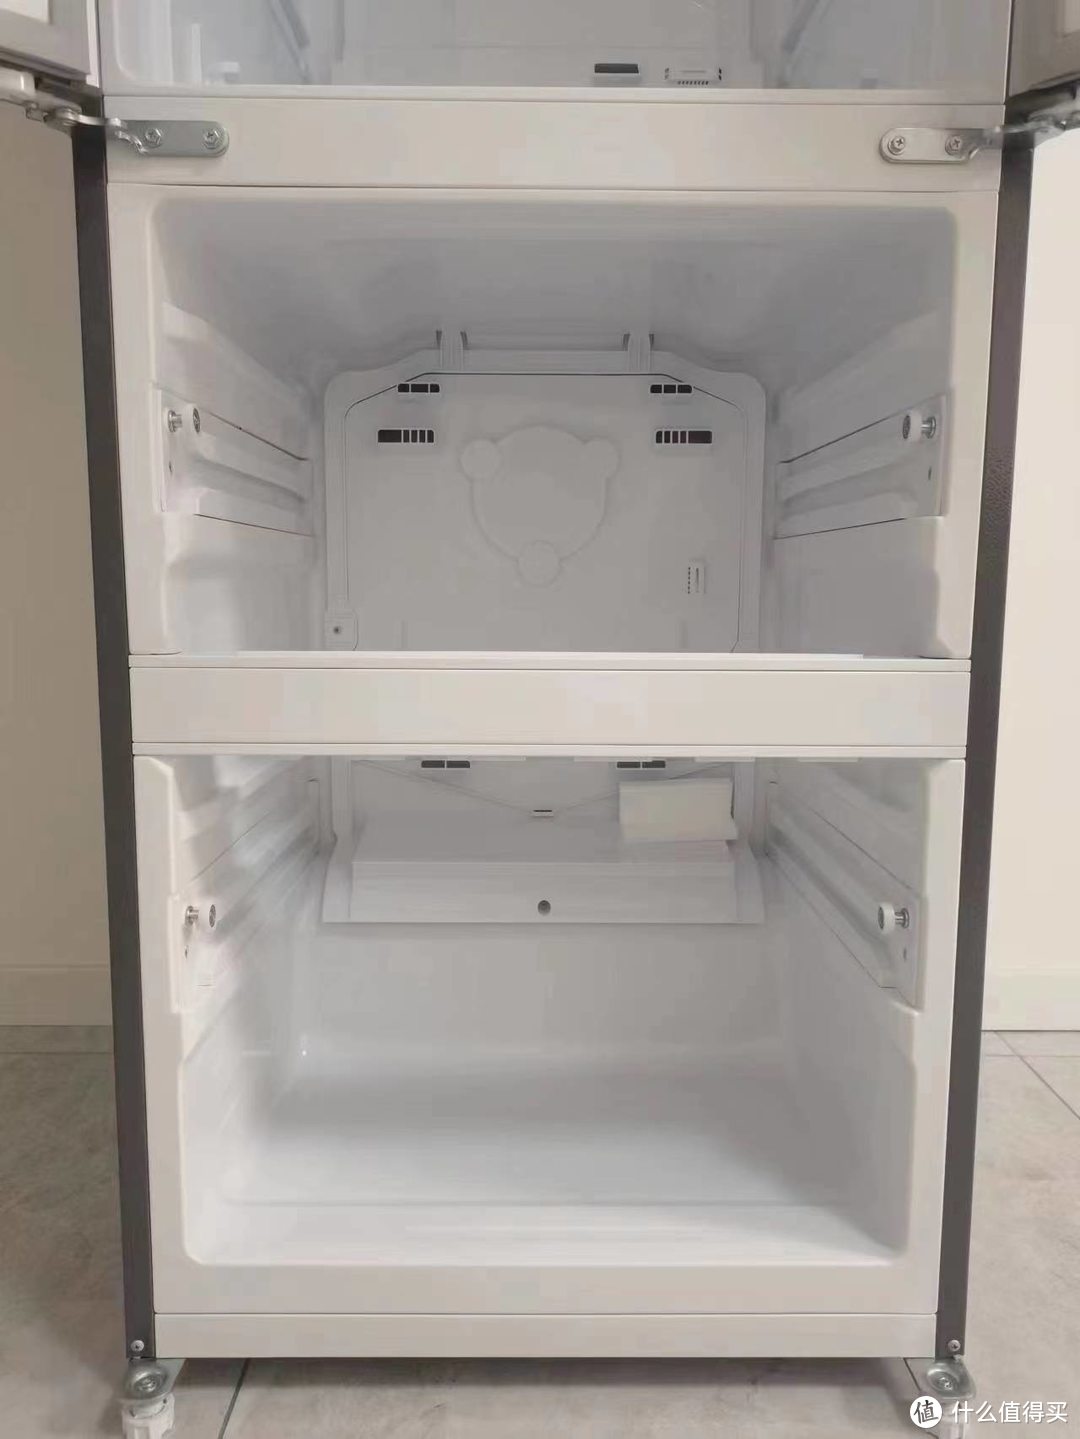 冰箱到底放厨房还是客厅？能否有一款容积大体积小的冰箱来节省室内空间呢？